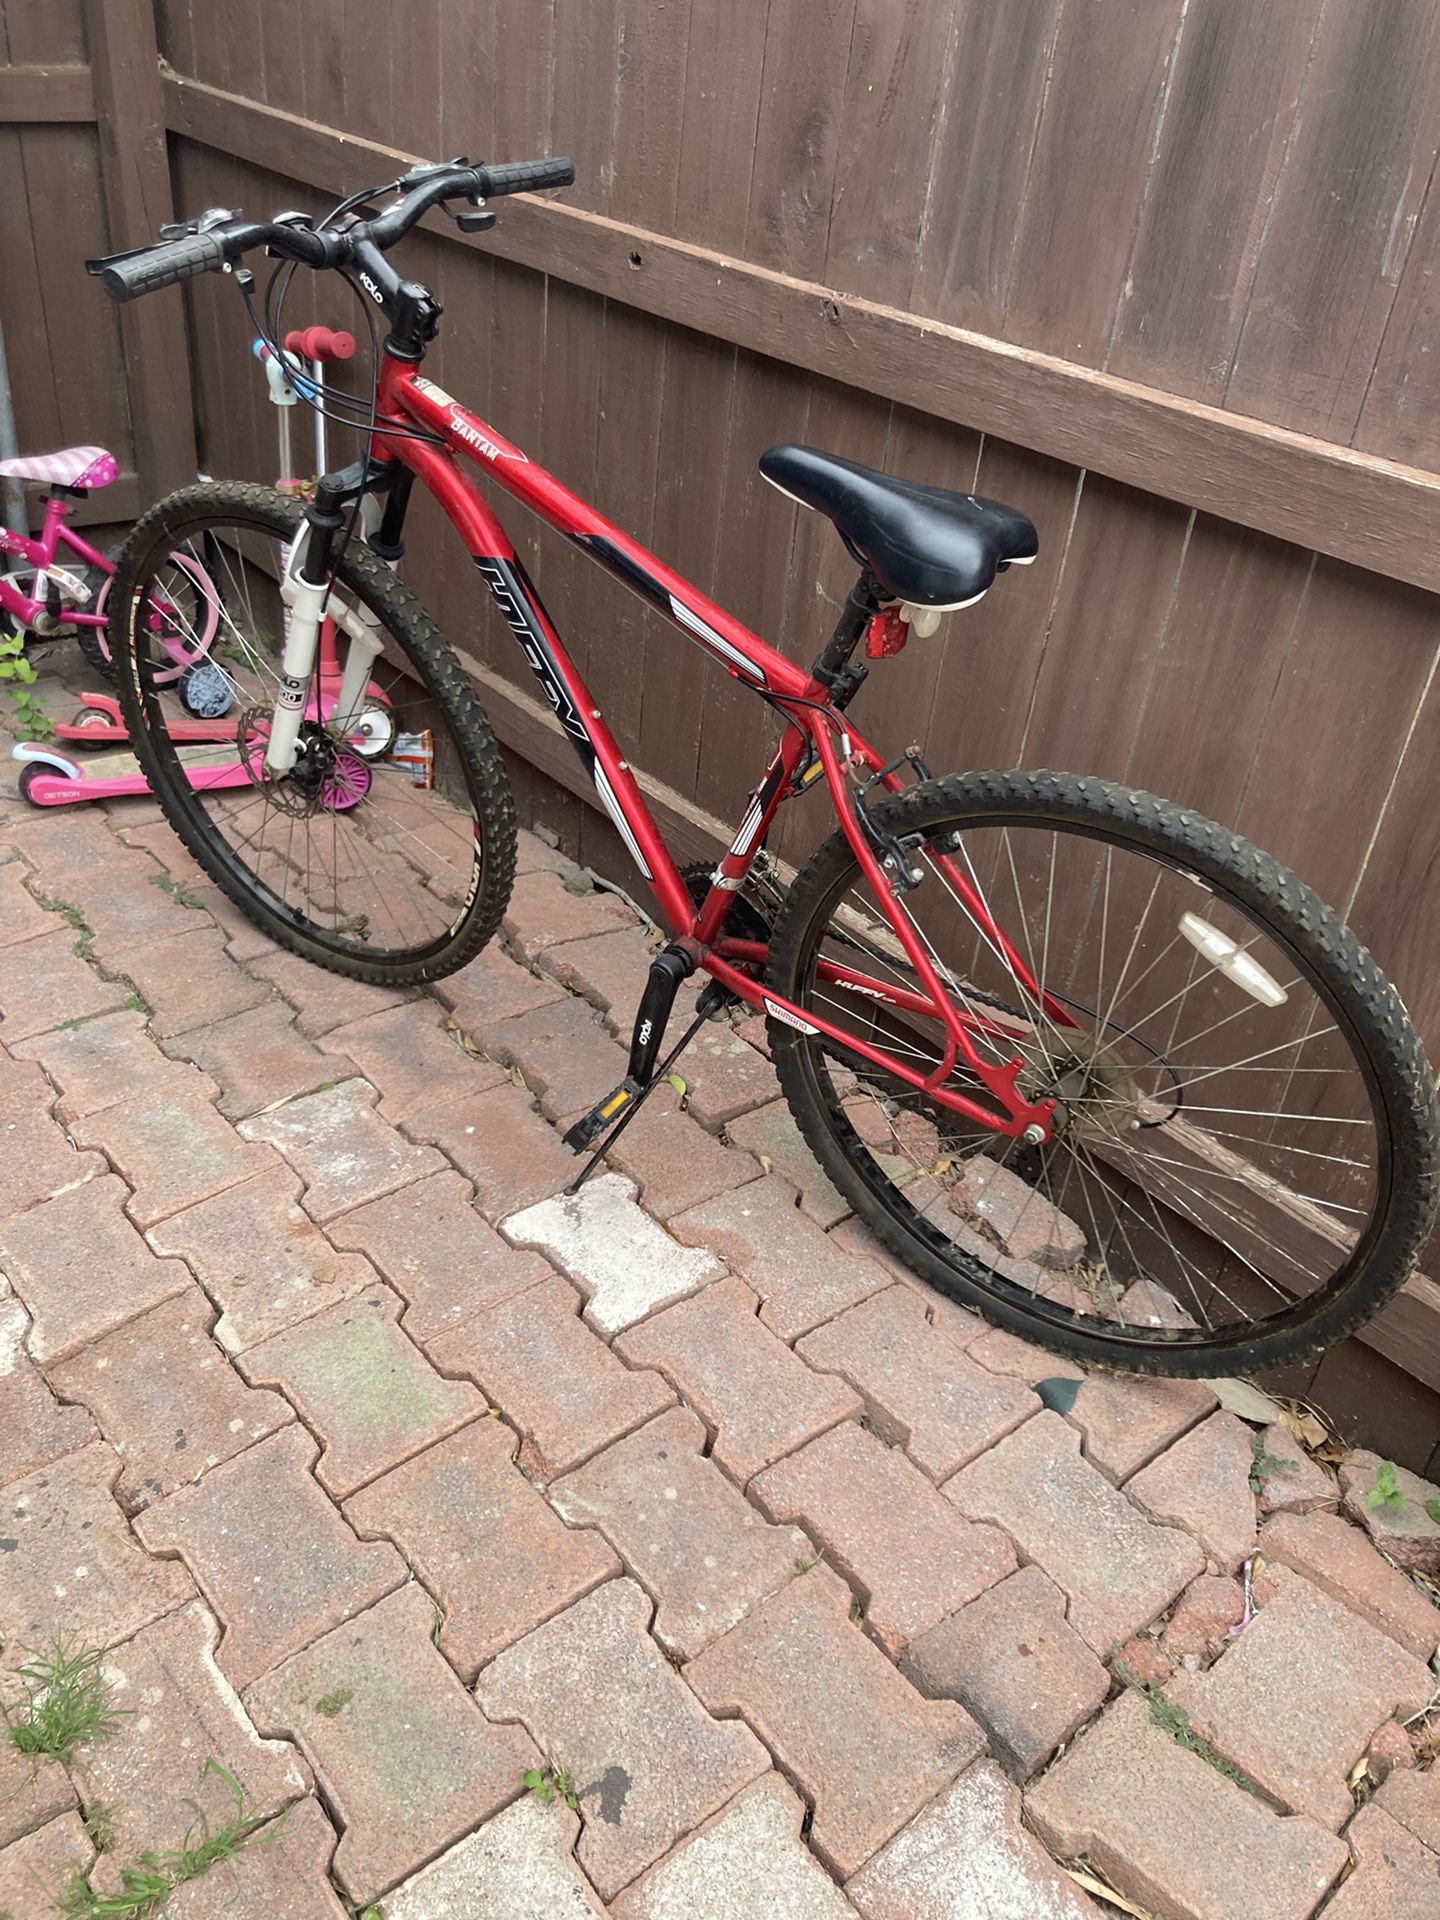 29” Huffy Bike Almost New $85 Obo